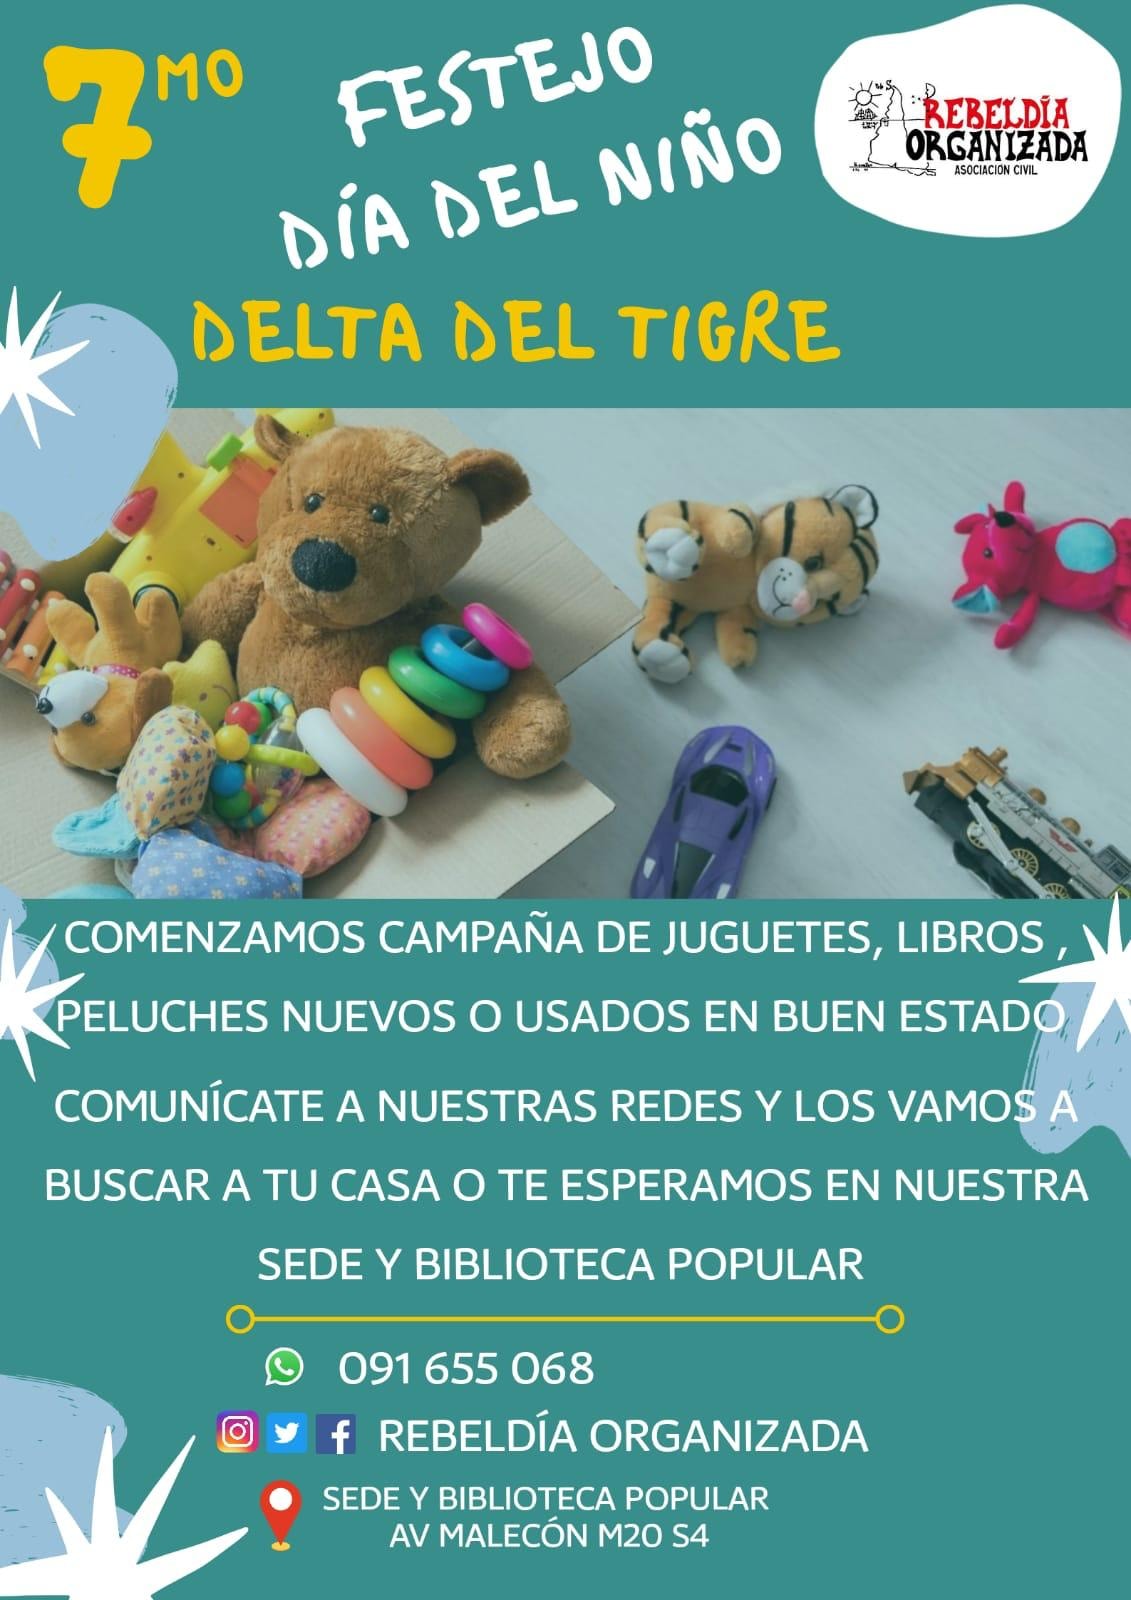 Rebeldía Organizada recolecta juguetes para el día del niño